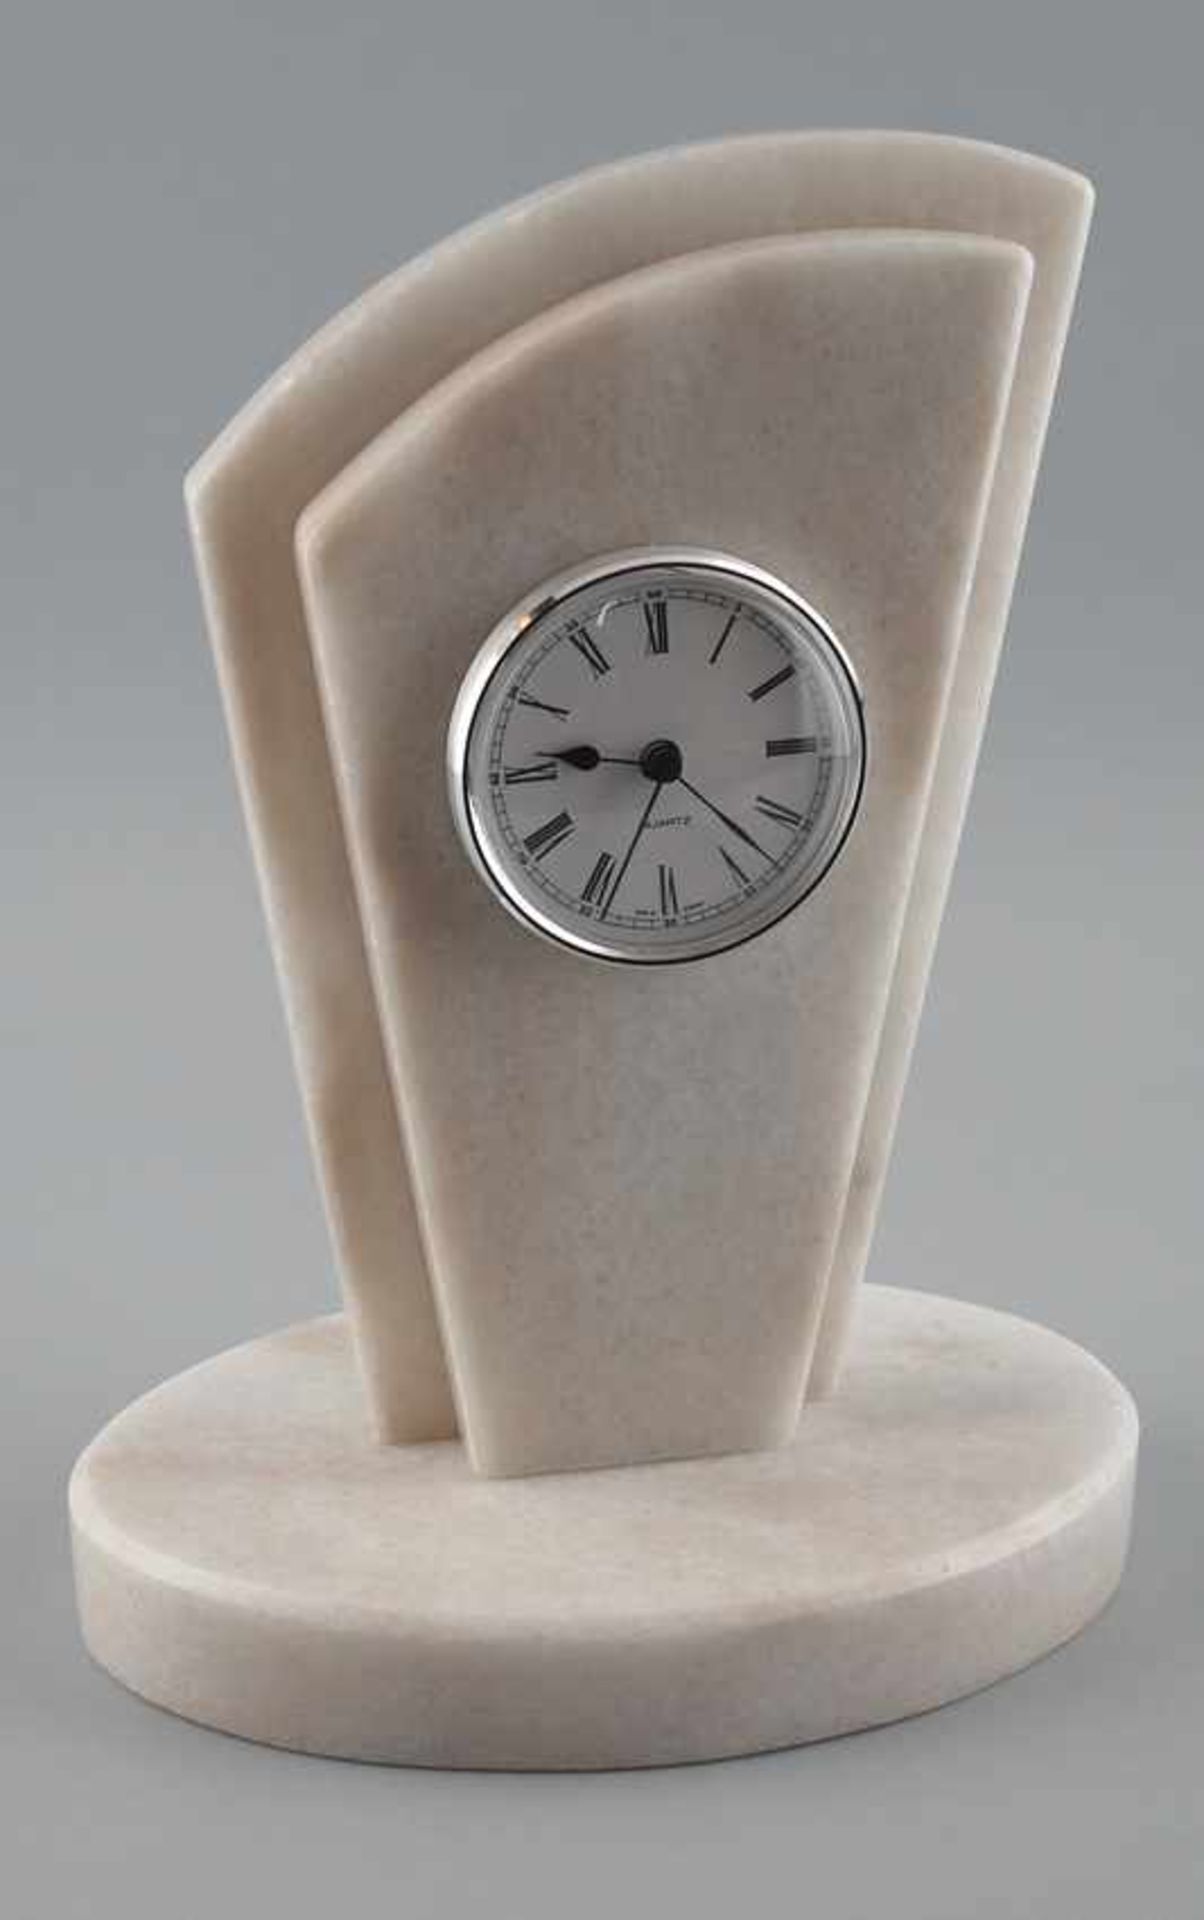 Tisch-Uhr Marmor Material: Tracia / Rumanien, geometrische Form, Handarbeit von einem deutschen